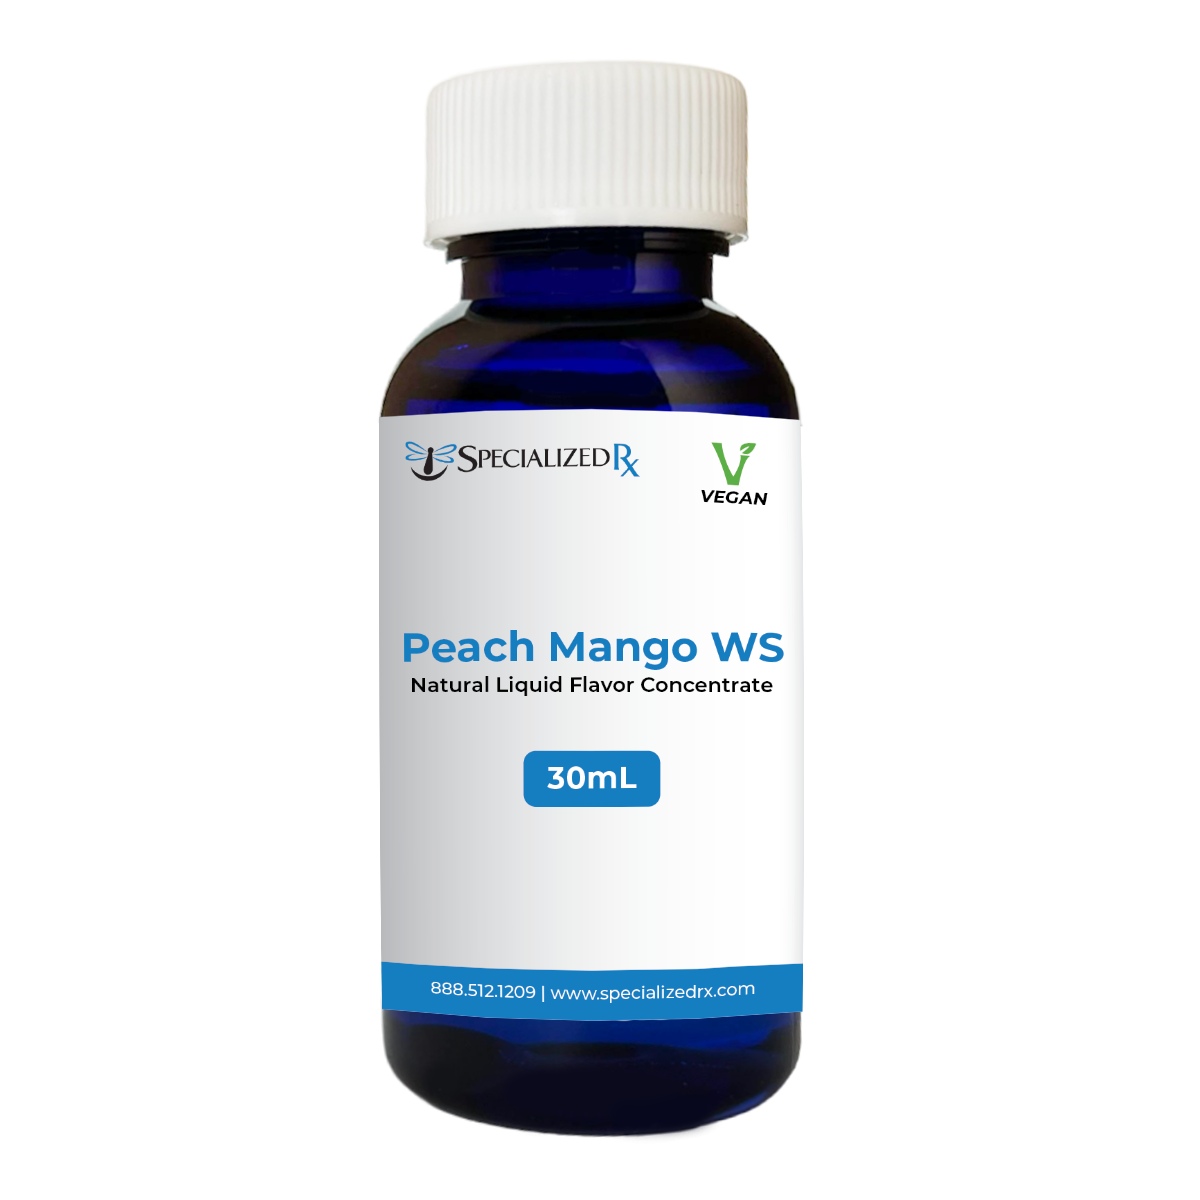 Peach Mango WS Natural Liquid Flavor Concentrate